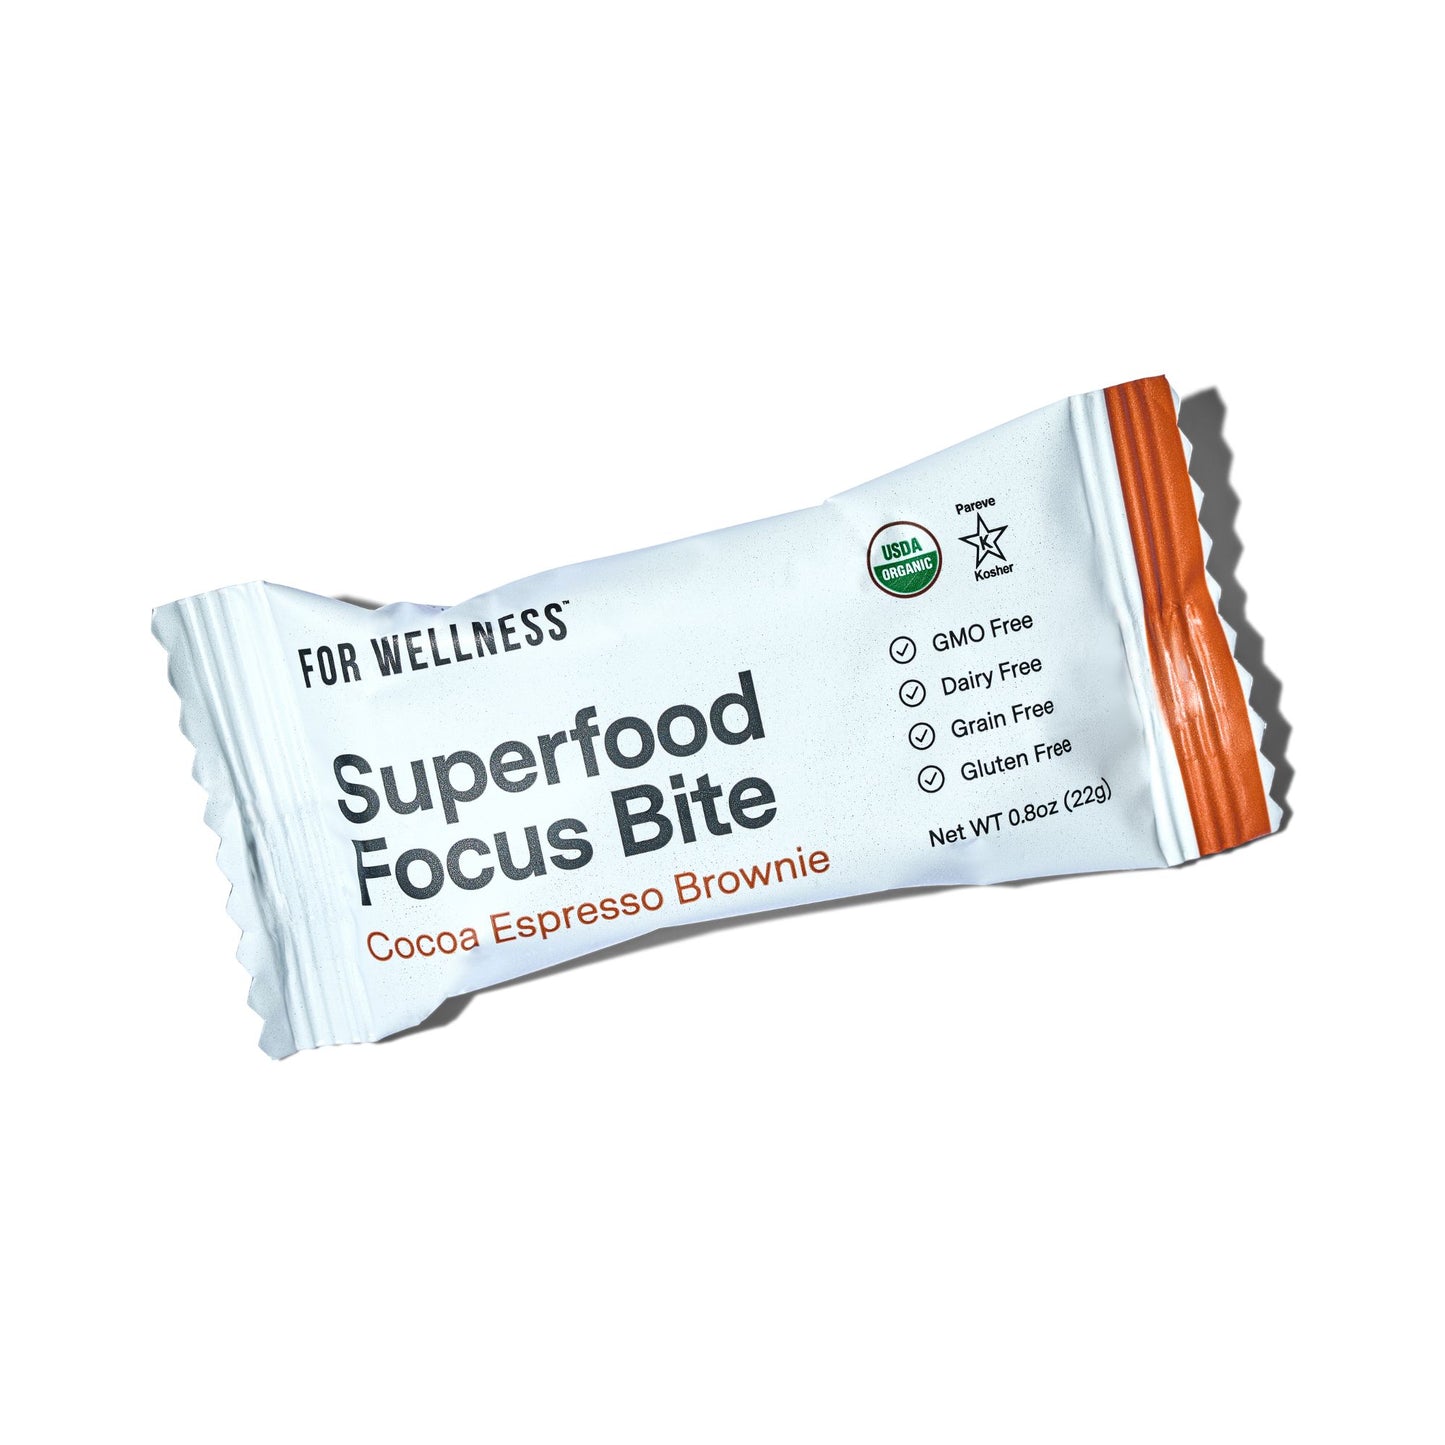 Superfood Bites Focus